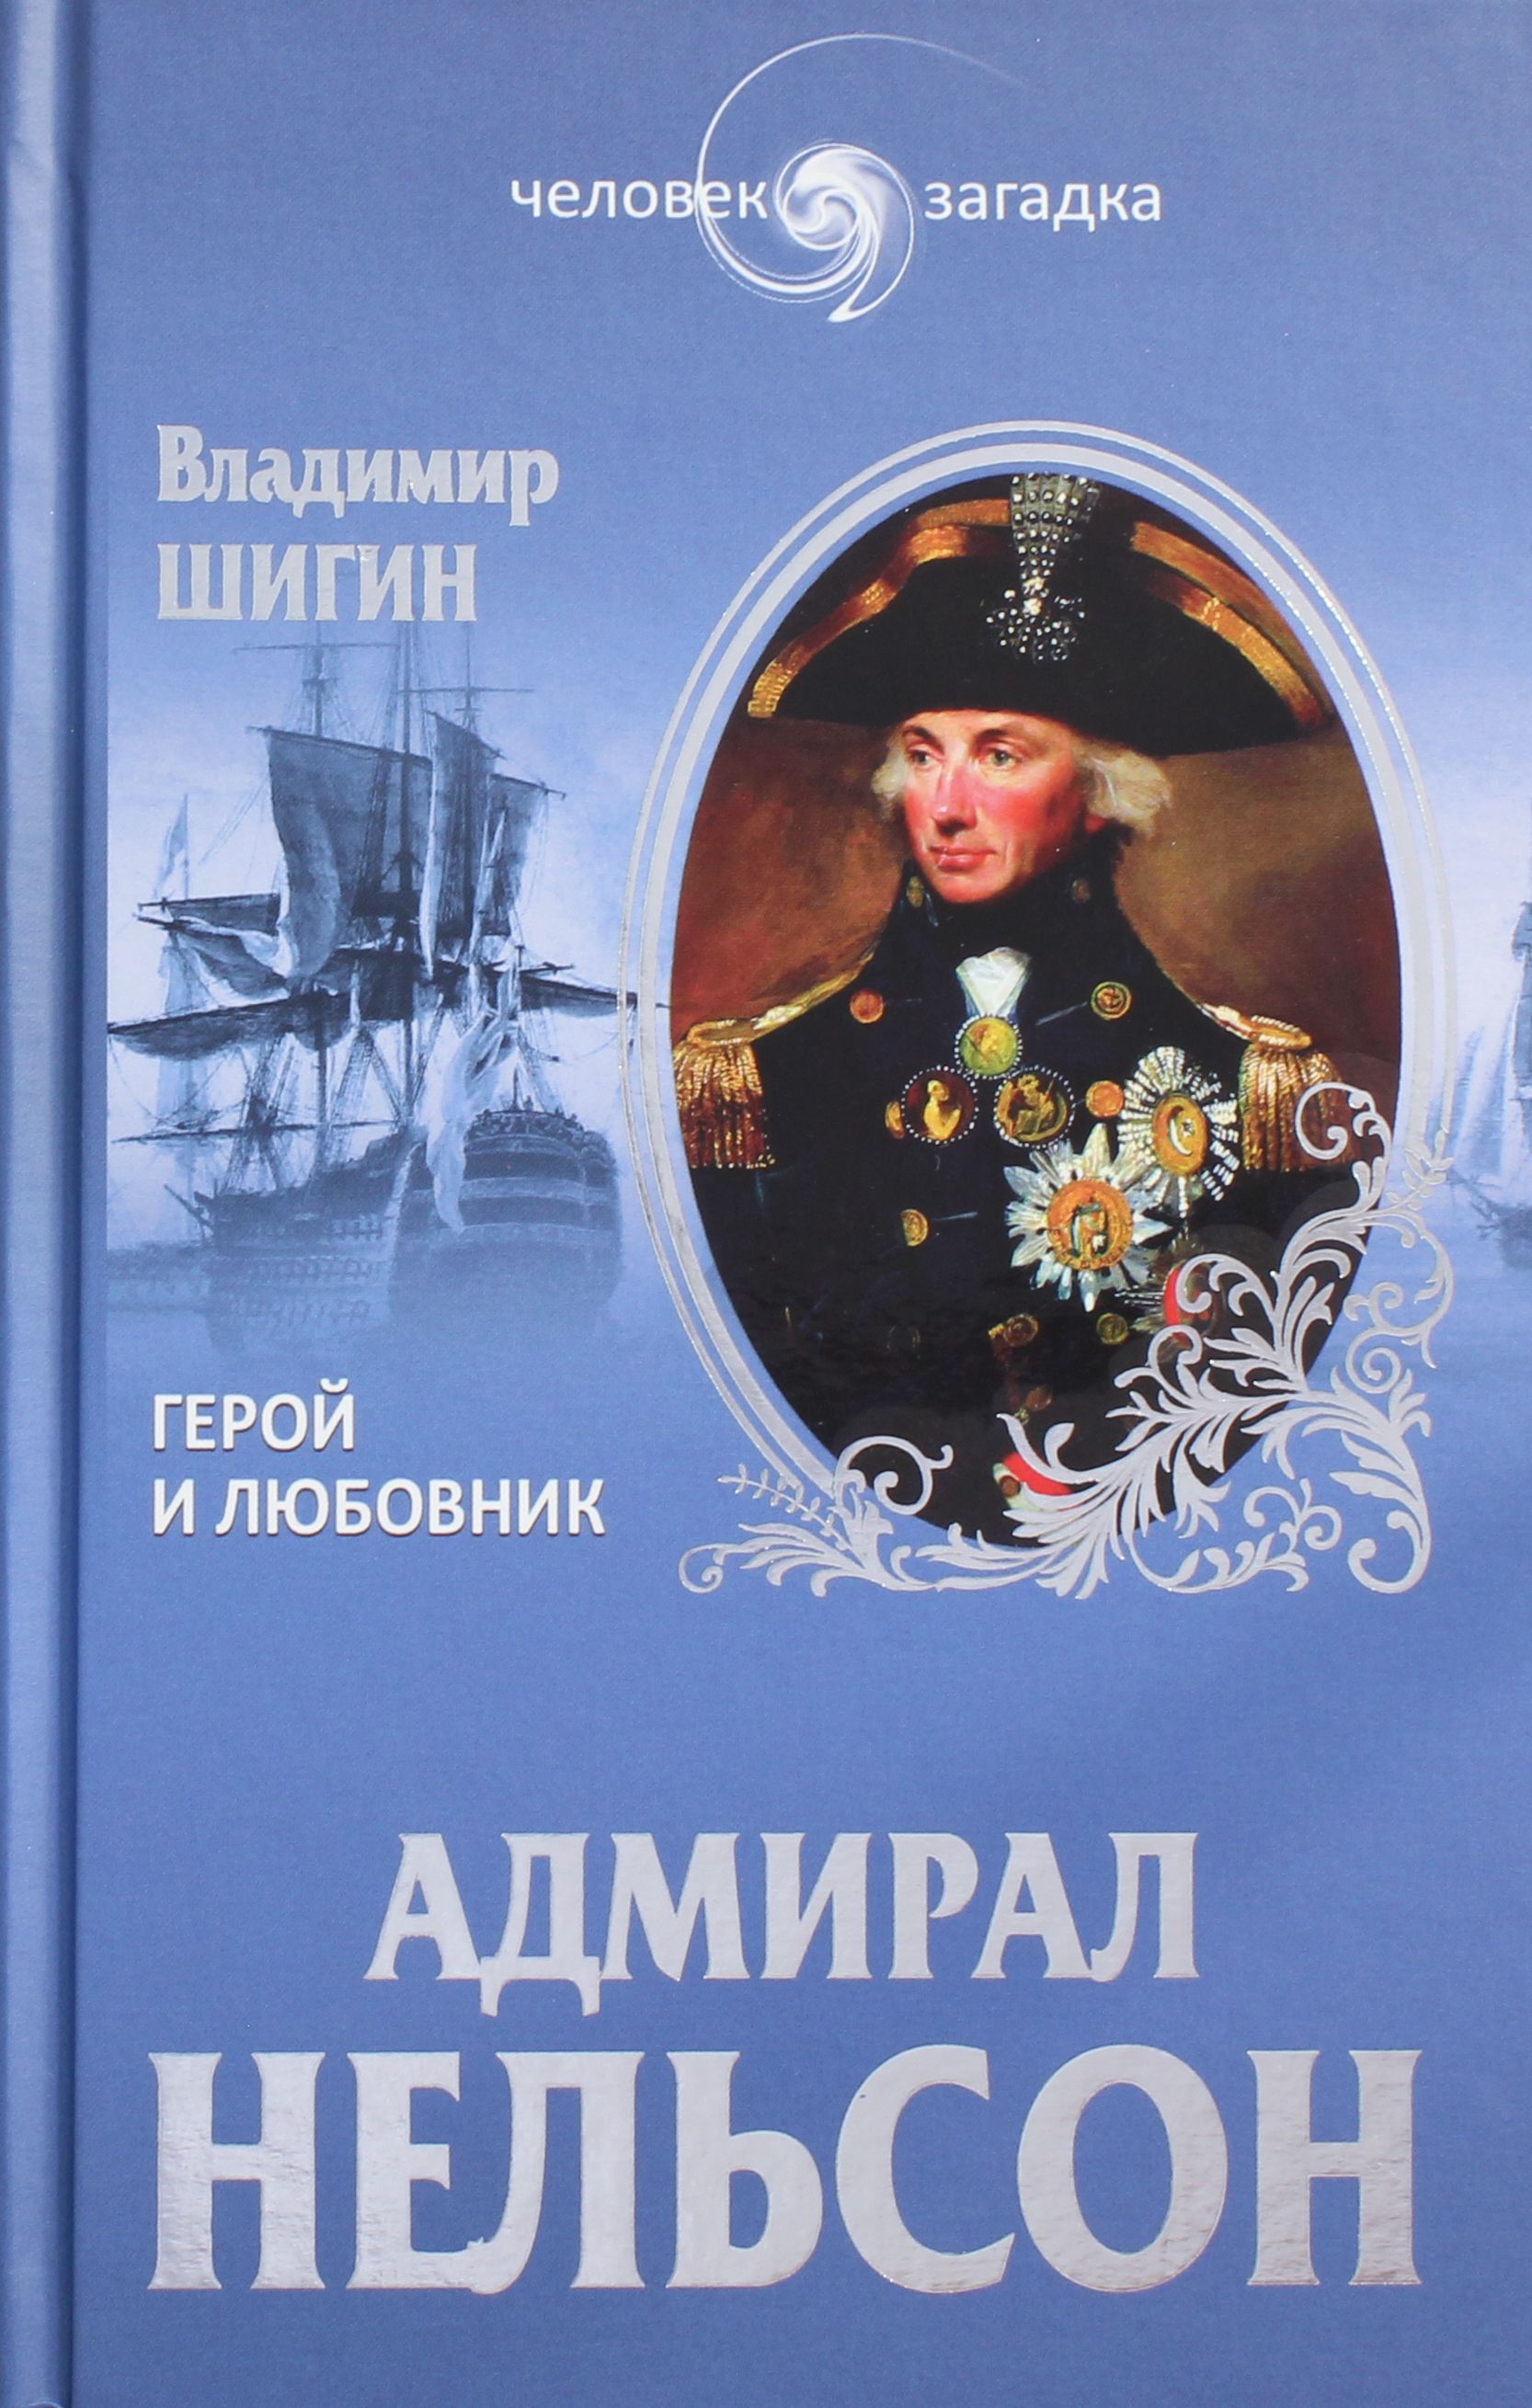 Адмирал книги слушать. Адмирал Нельсон. Шигин в.в. "Адмирал Нельсон". Книга Адмирал. Нельсон герой.